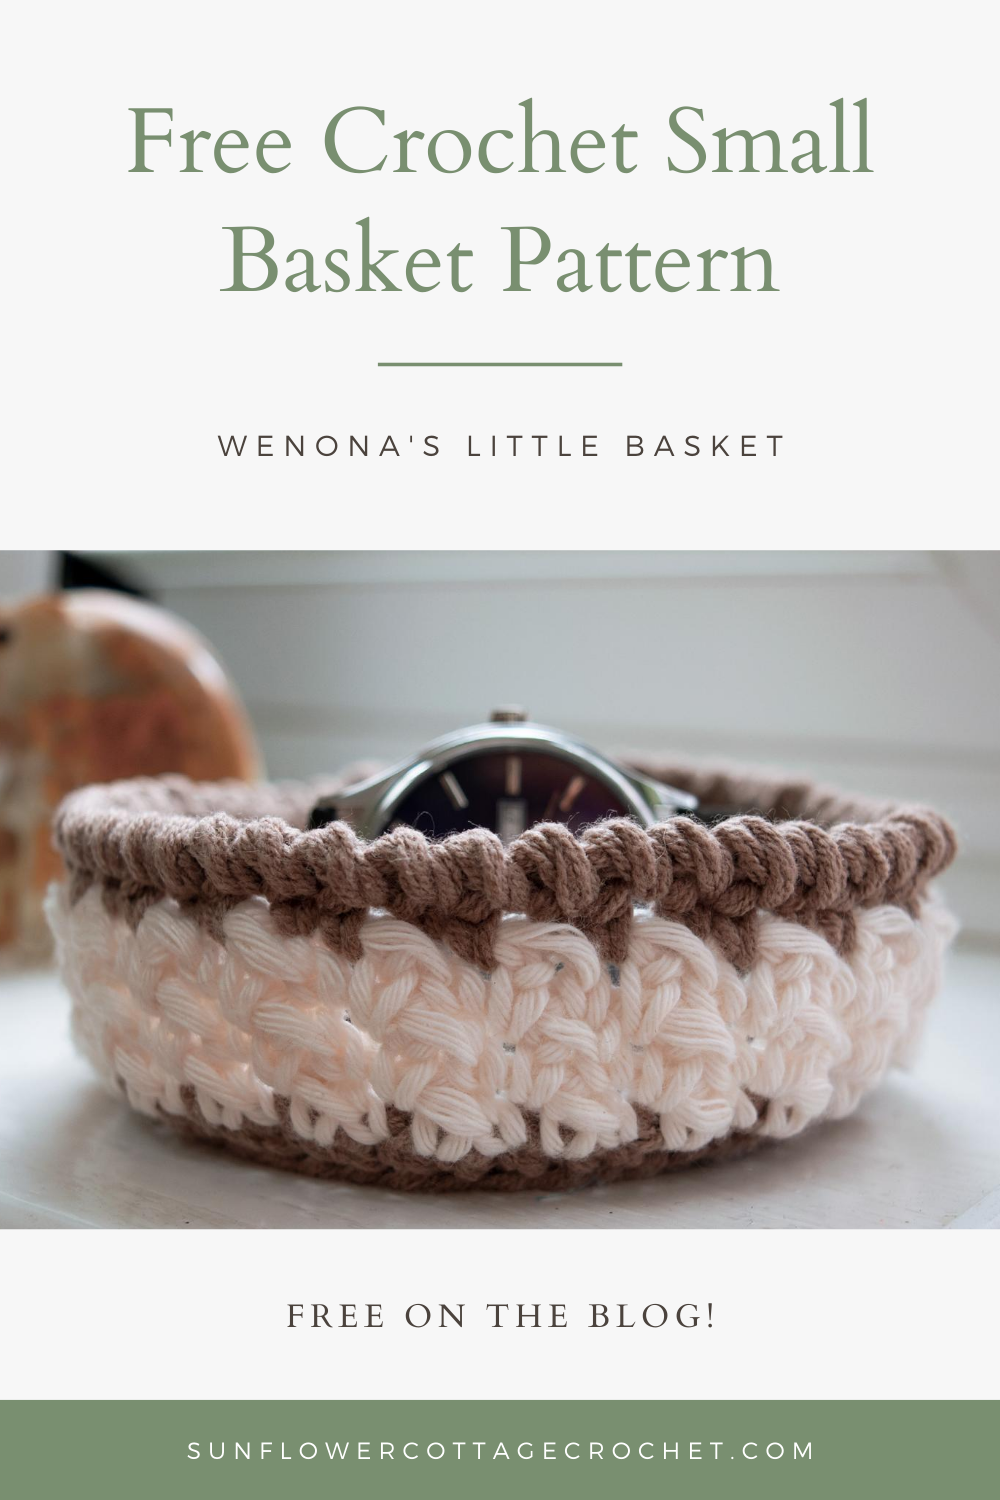 wenona's little basket free crochet pattern